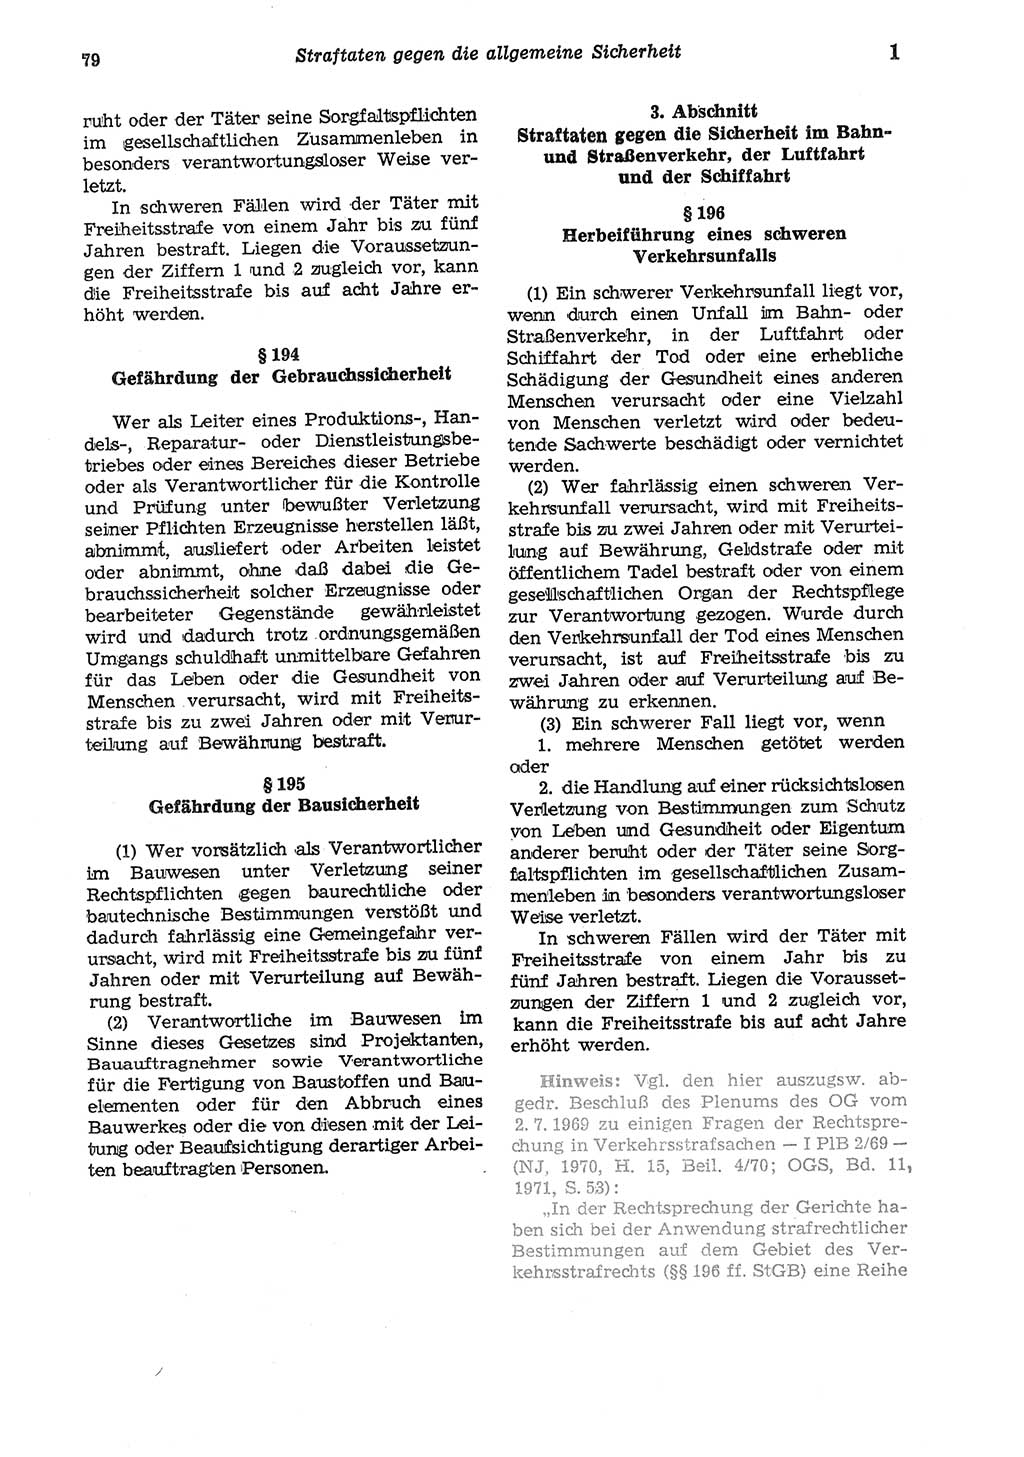 Strafgesetzbuch (StGB) der Deutschen Demokratischen Republik (DDR) und angrenzende Gesetze und Bestimmungen 1975, Seite 79 (StGB DDR Ges. Best. 1975, S. 79)